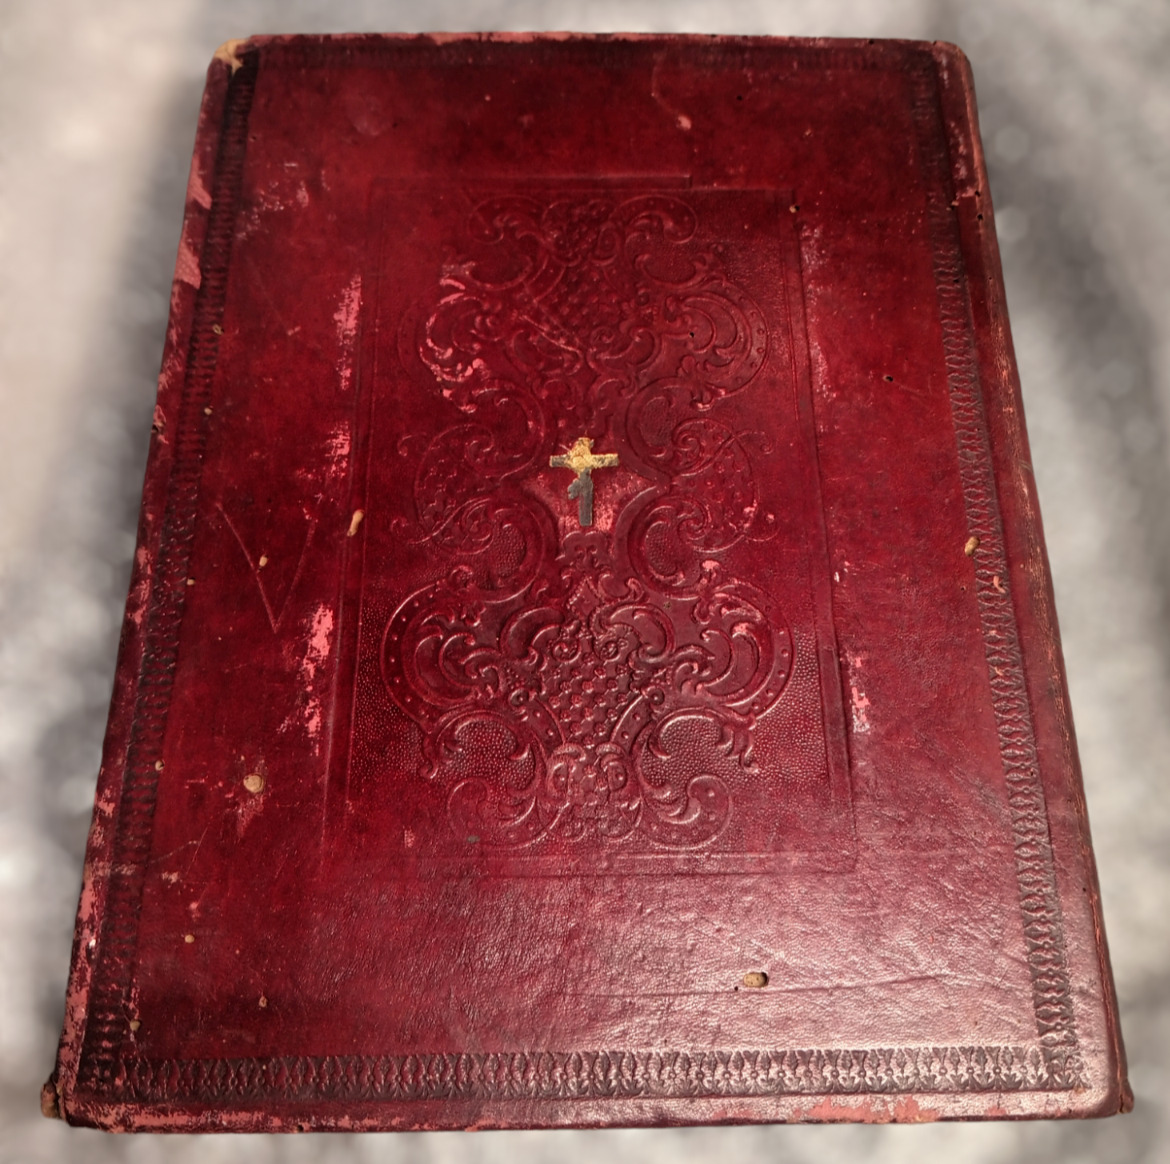 THE HOLY BIBLE, JERUSALEM, 1863